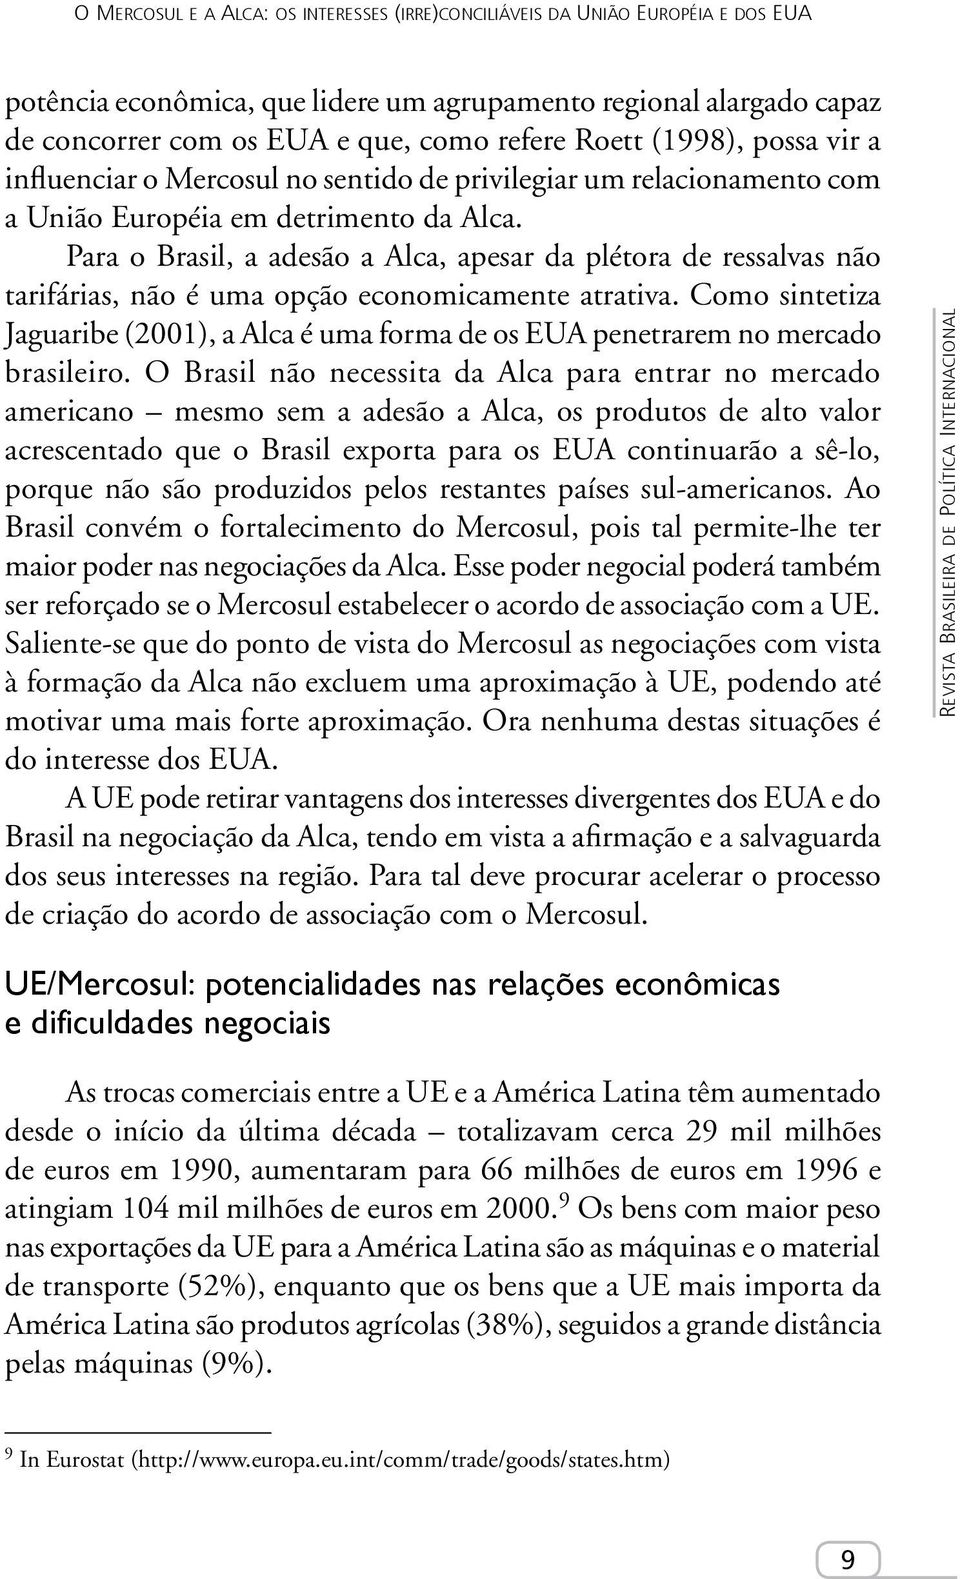 Para o Brasil, a adesão a Alca, apesar da plétora de ressalvas não tarifárias, não é uma opção economicamente atrativa.